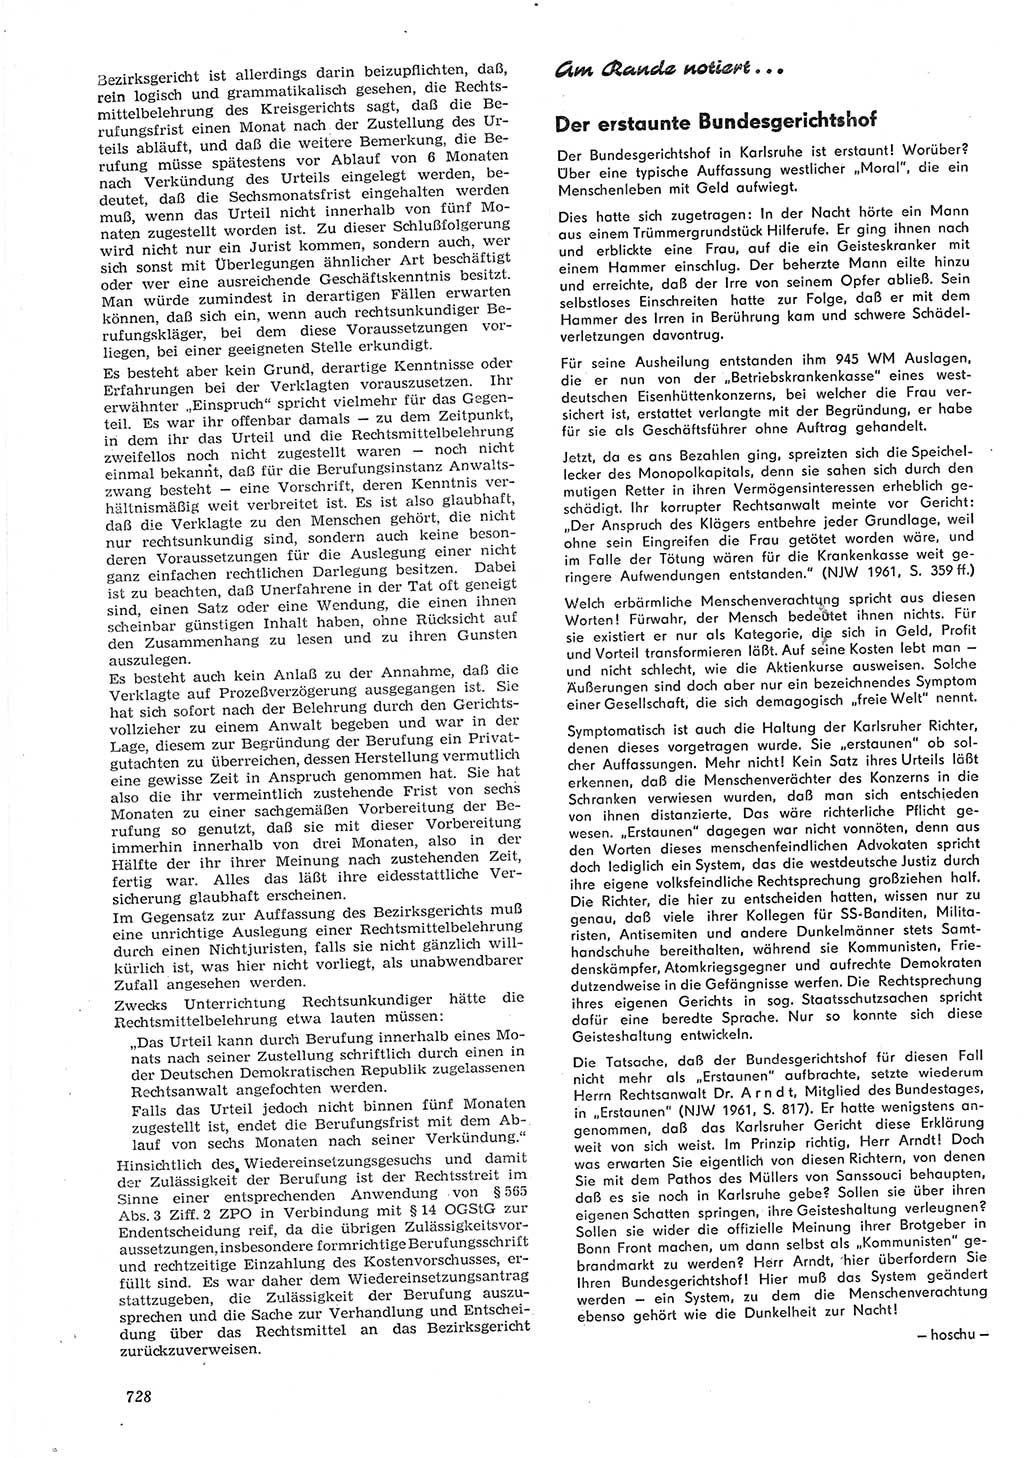 Neue Justiz (NJ), Zeitschrift für Recht und Rechtswissenschaft [Deutsche Demokratische Republik (DDR)], 15. Jahrgang 1961, Seite 728 (NJ DDR 1961, S. 728)